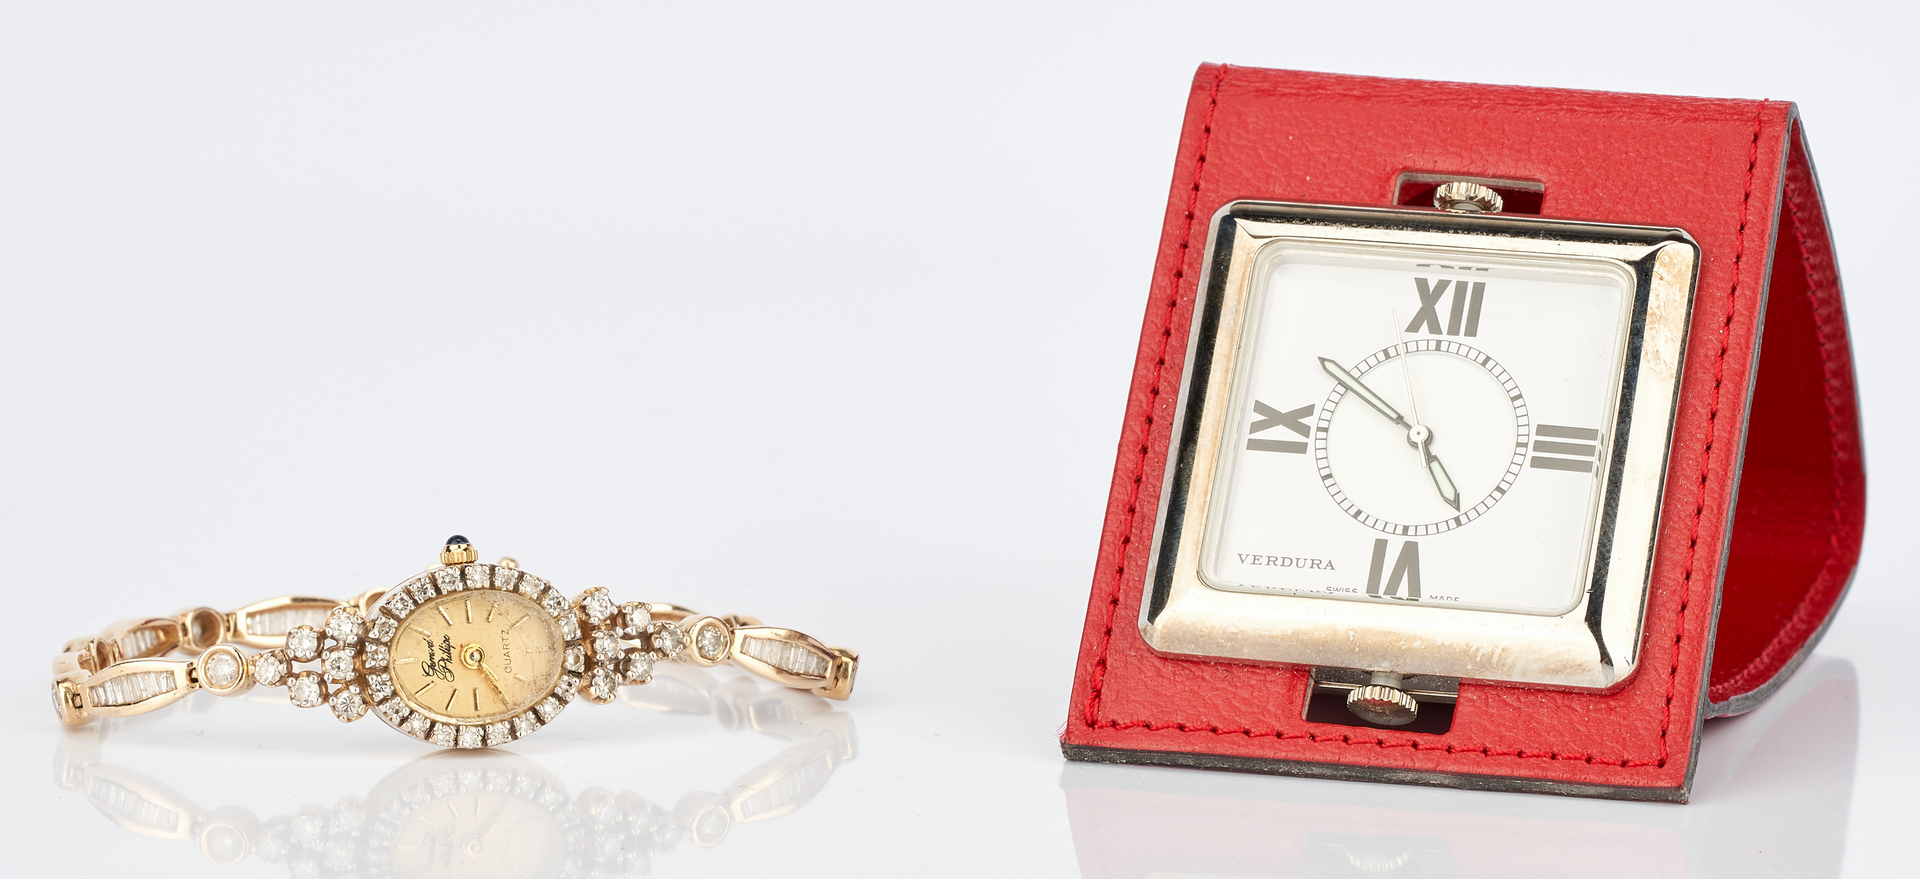 Lot 1007: 2 Watches: Gerard Phillippe 14K Watch w/ Diamonds & Verdura Pocket Watch